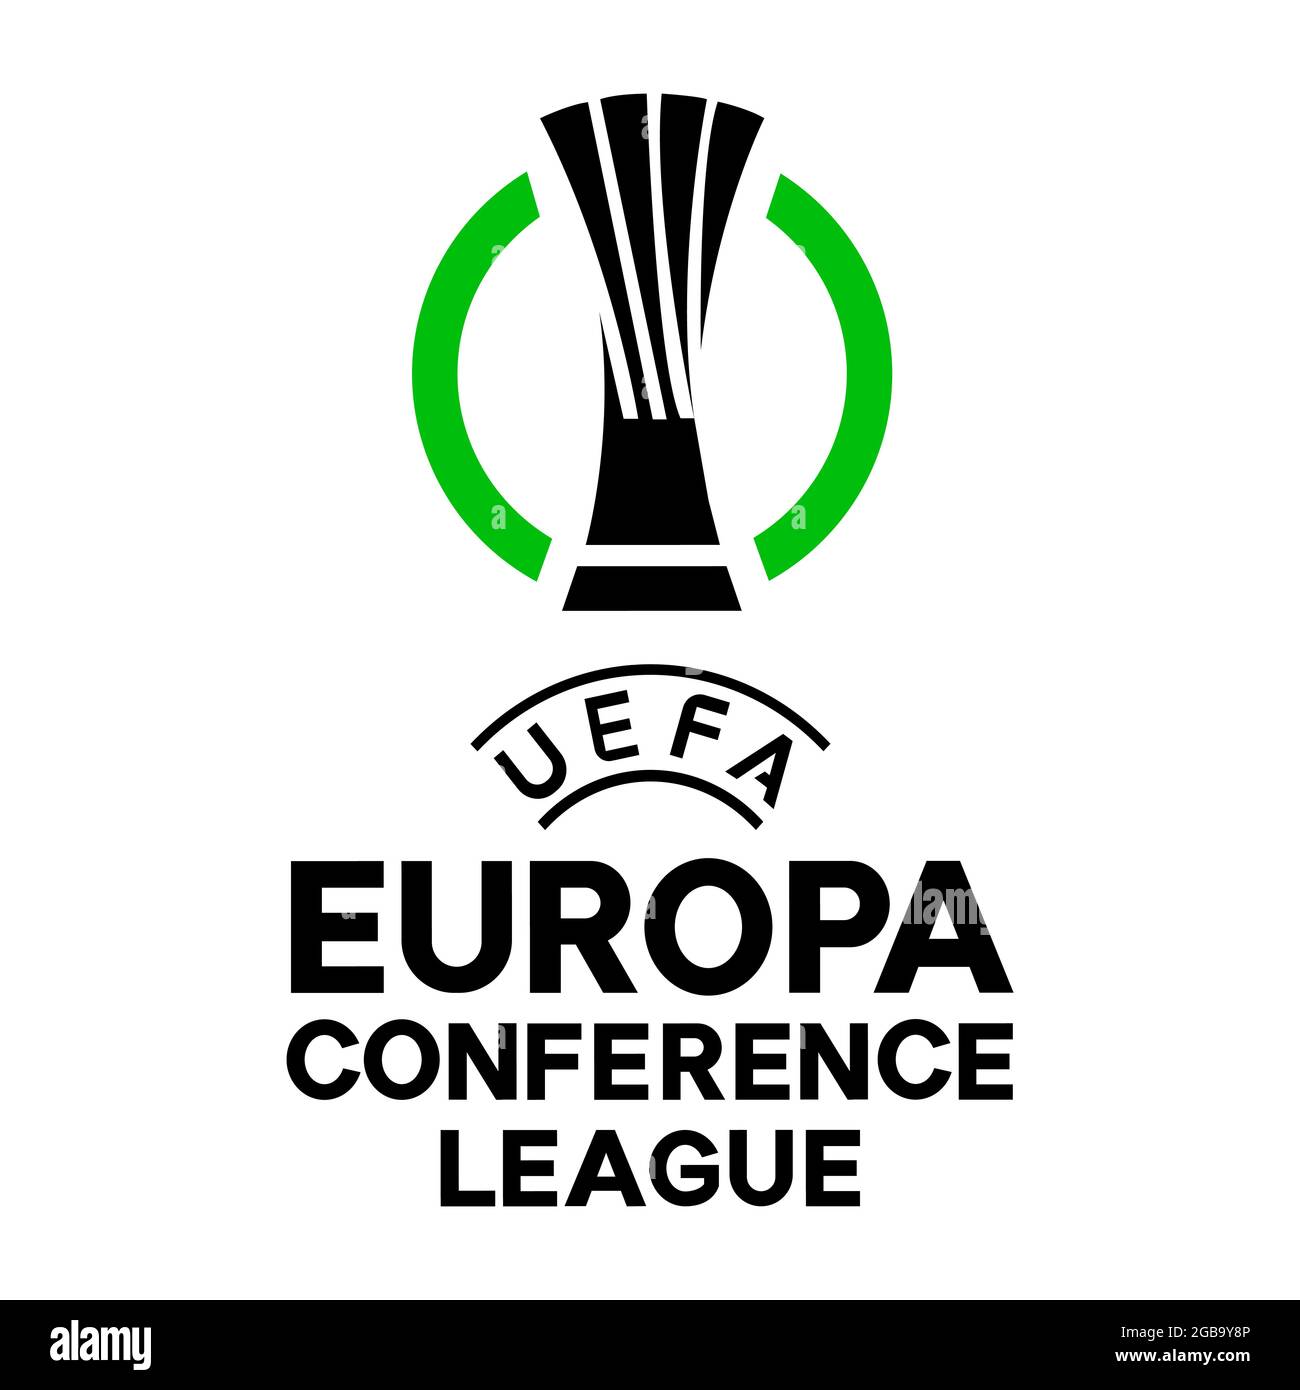 Vinnytsia, Ucraina - 30 luglio 2021. Logo della conferenza UEFA League. Illustrazione vettoriale editoriale Illustrazione Vettoriale